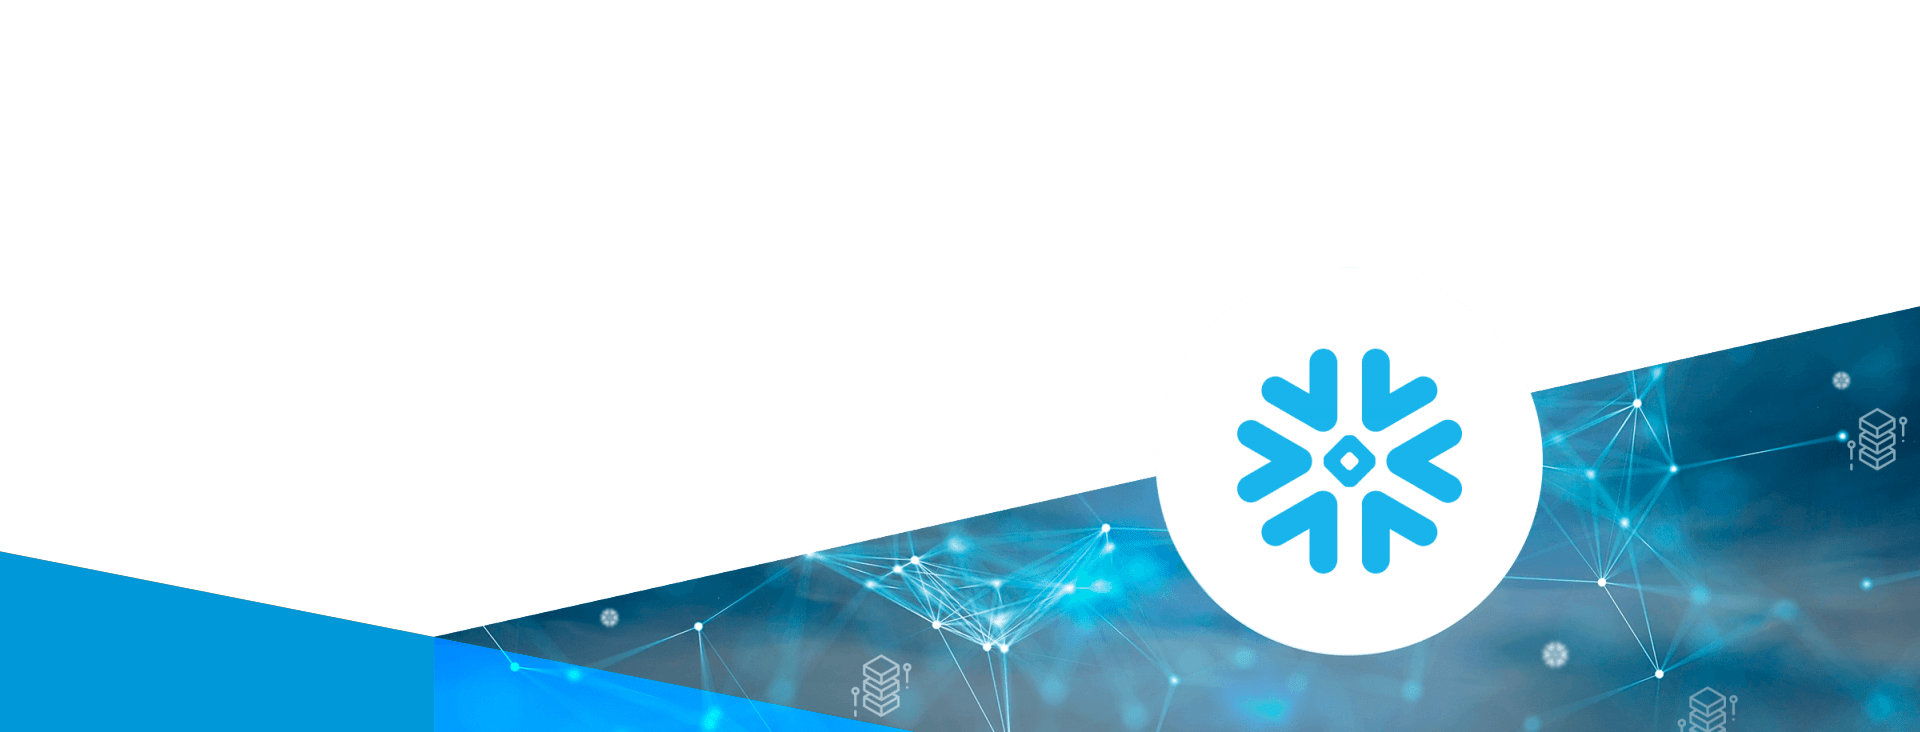 NextRow Digital’s Partnership with Snowflake